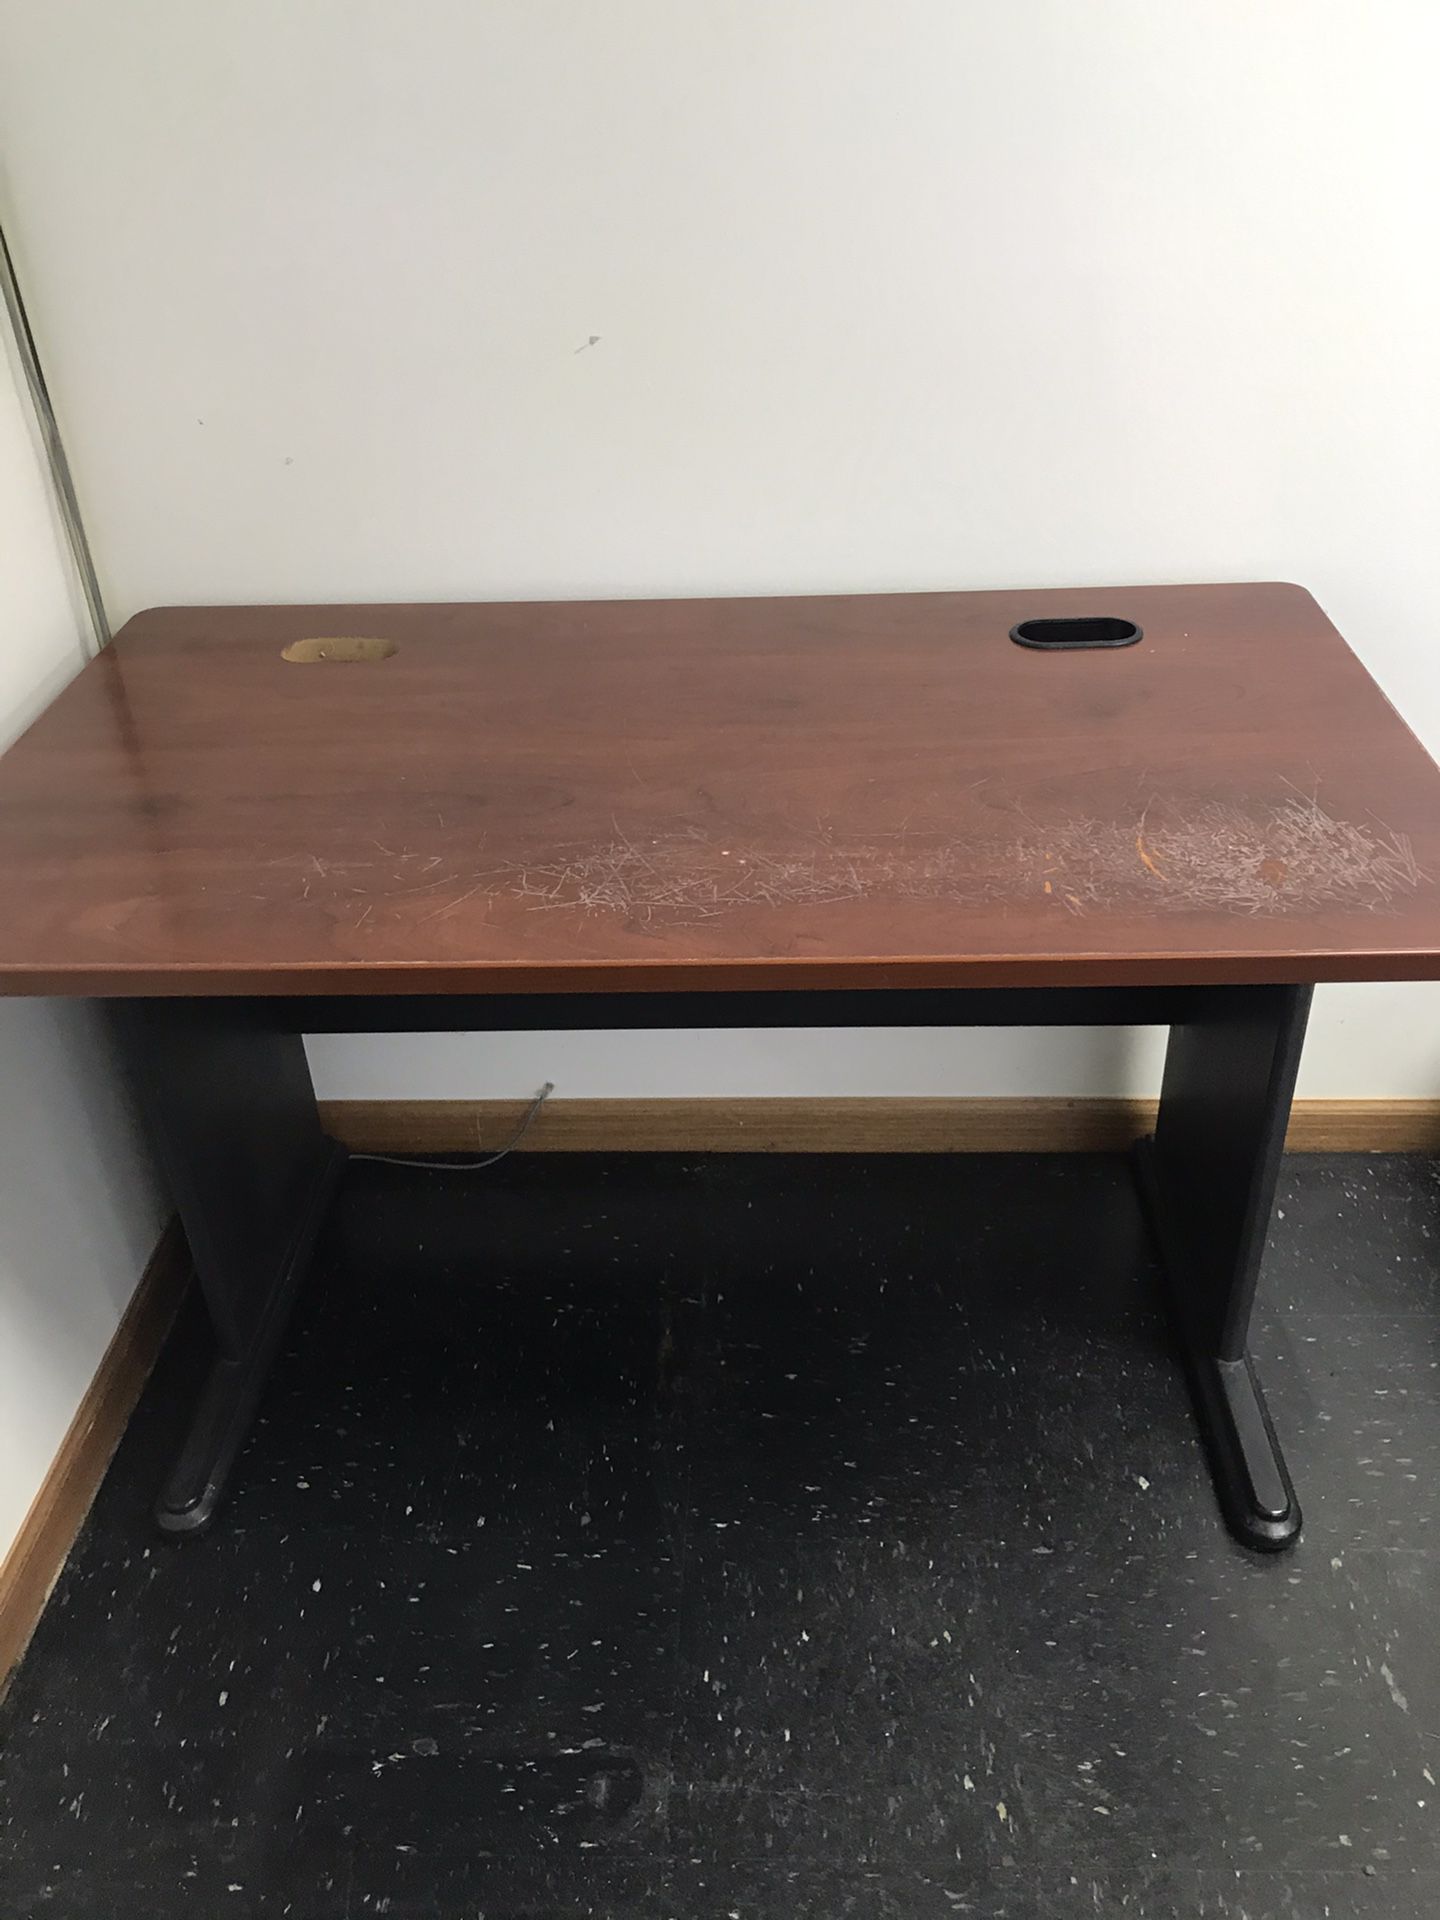 2 Desks